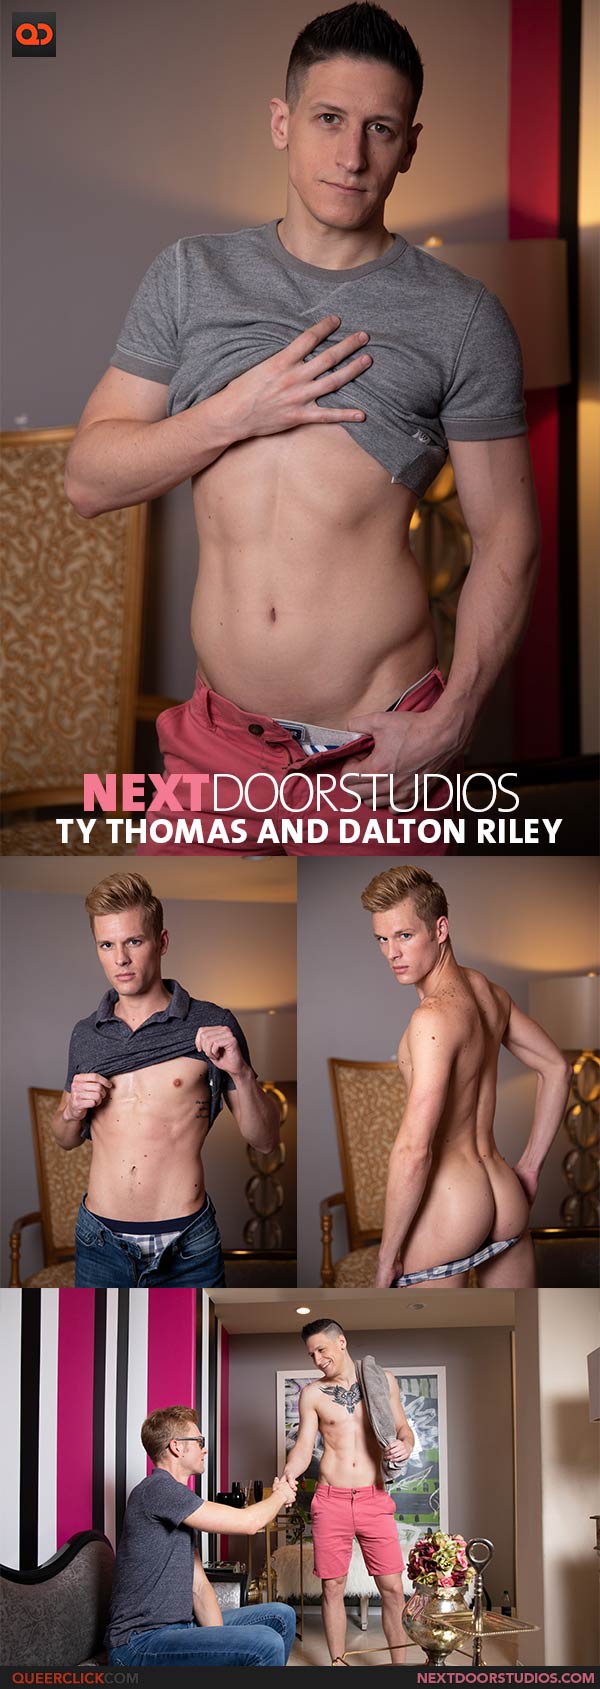 Next Door Studios:  Ty Thomas and Dalton Riley